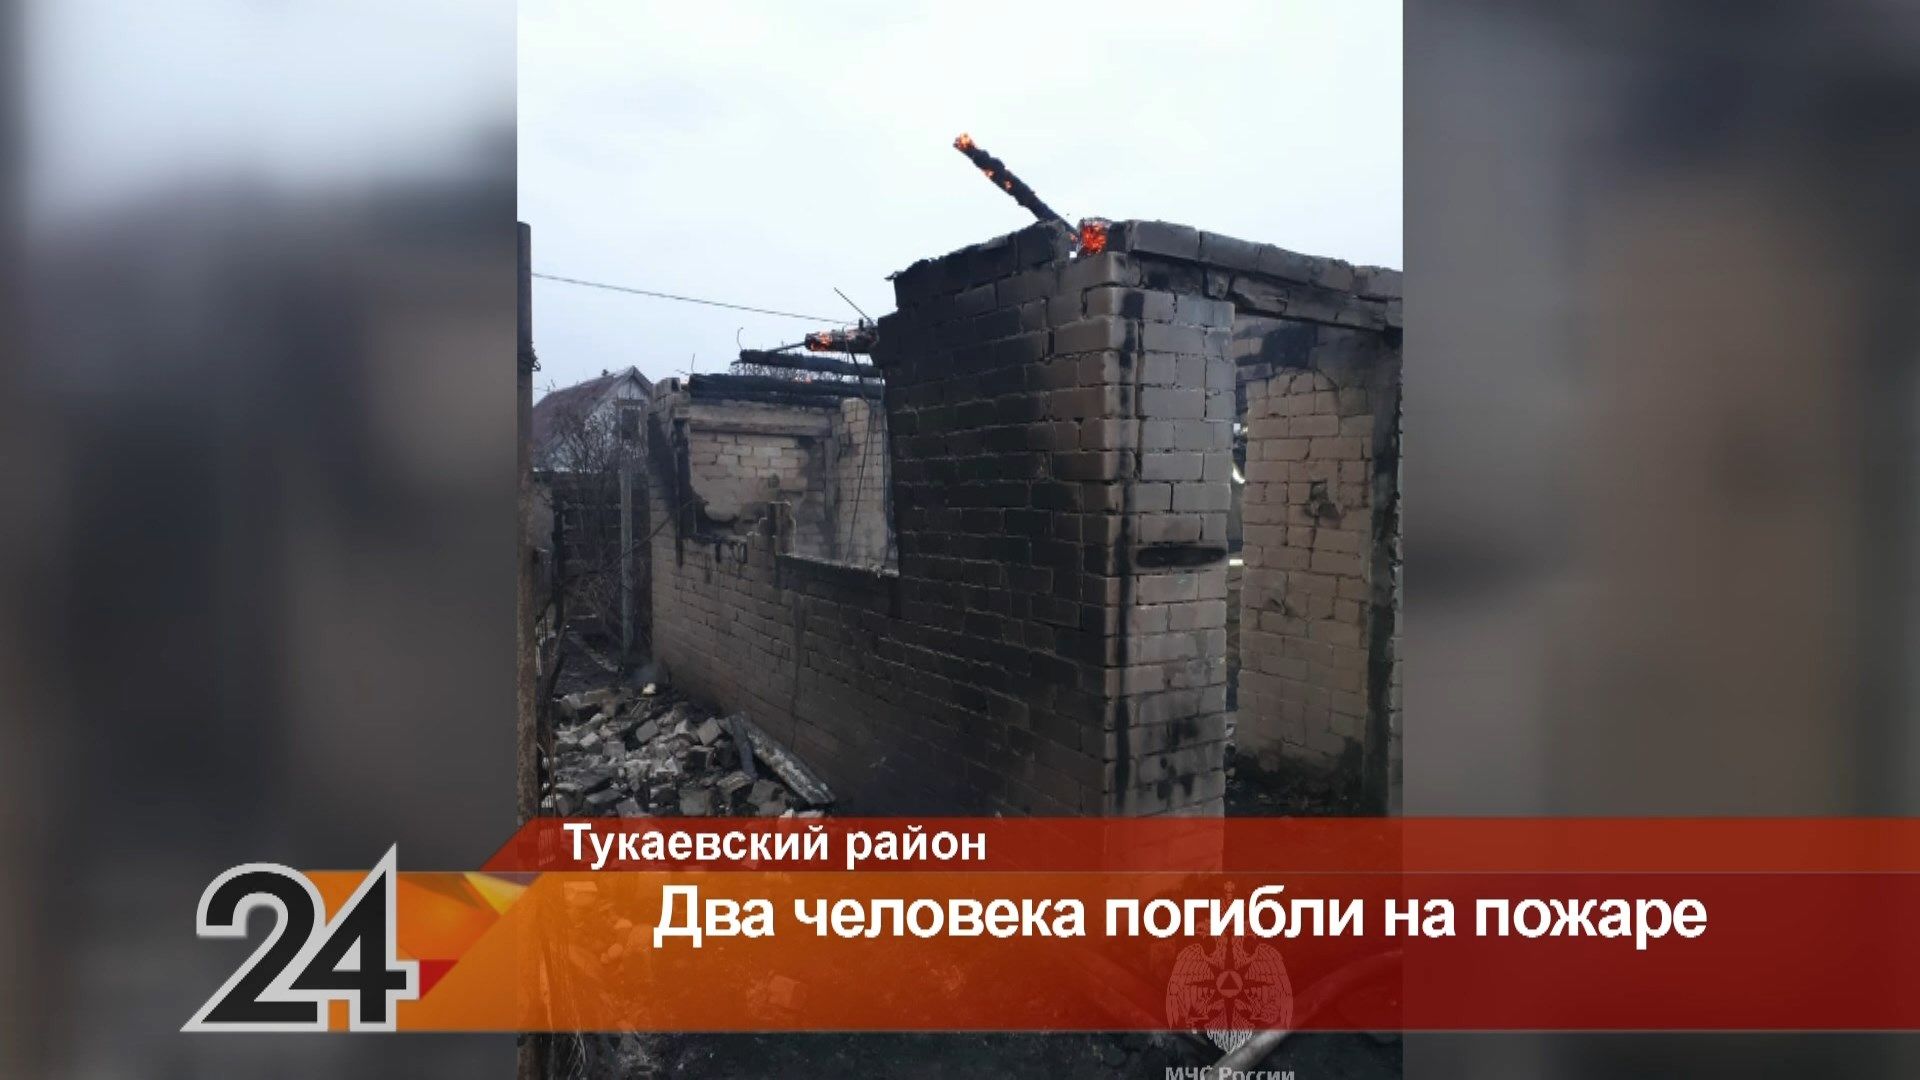 Два человека погибли при пожаре в Тукаевском районе